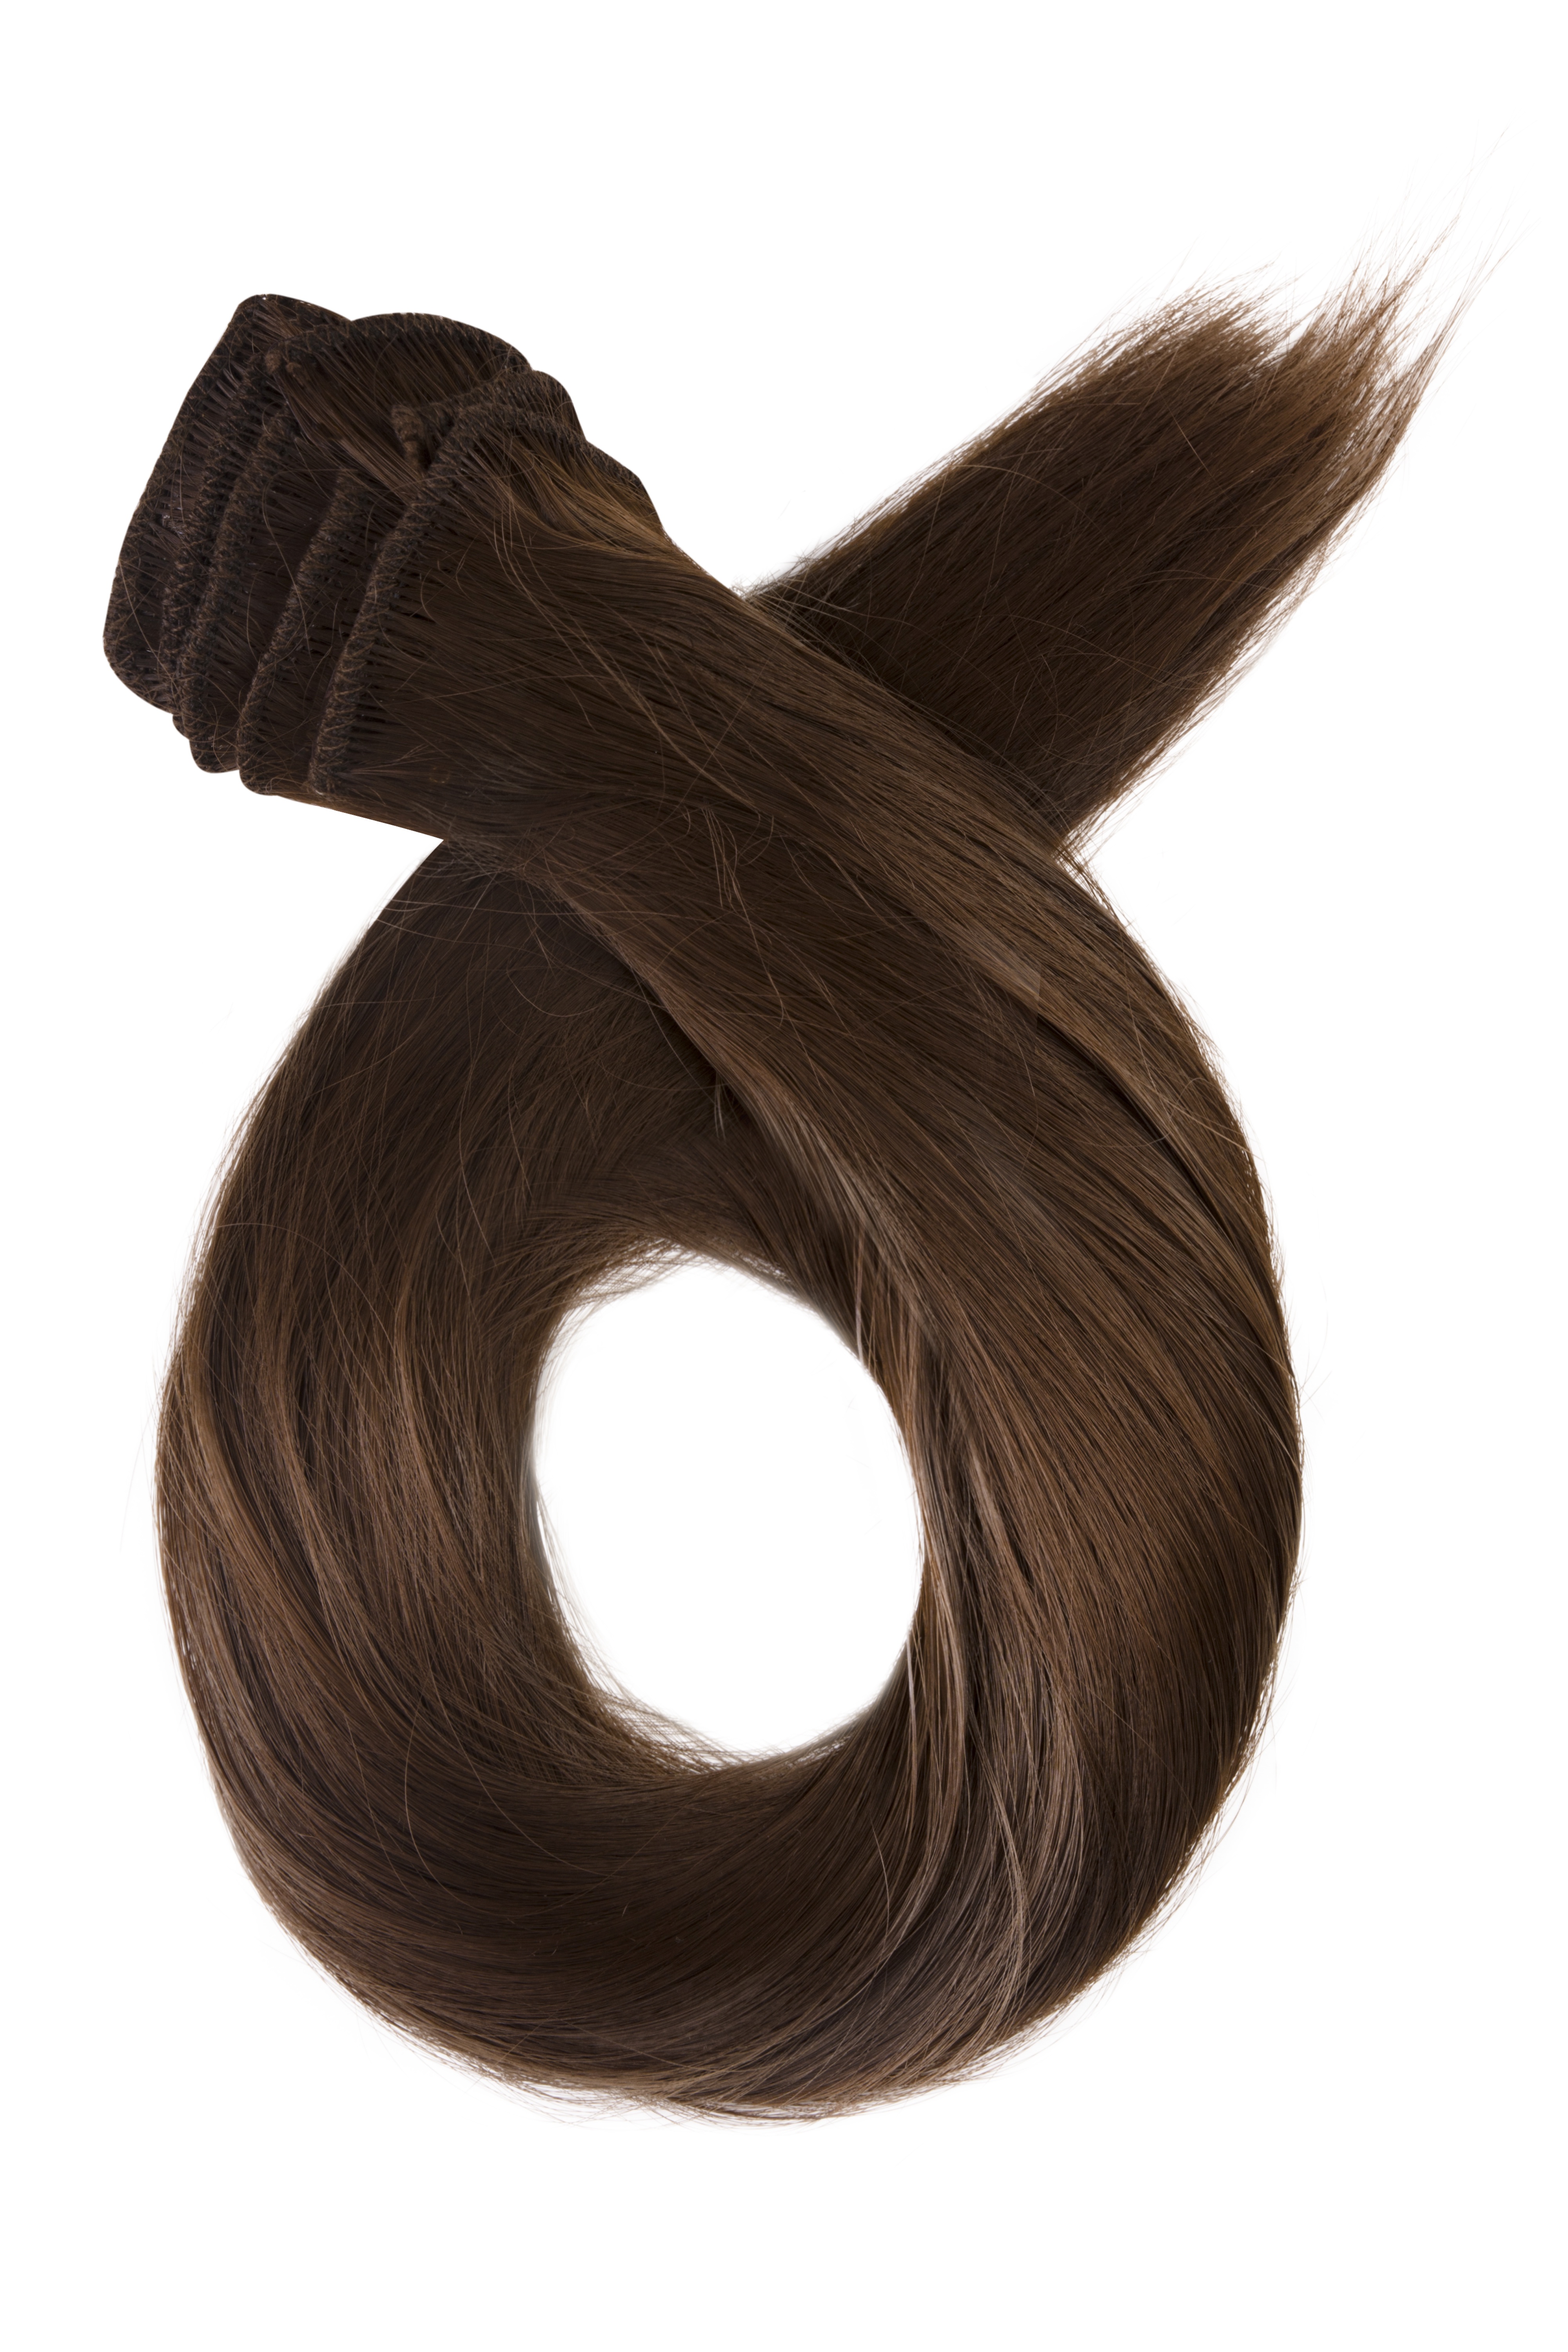 Prírodne hnedé clip in vlasy, 50cm, 115g, farba 8